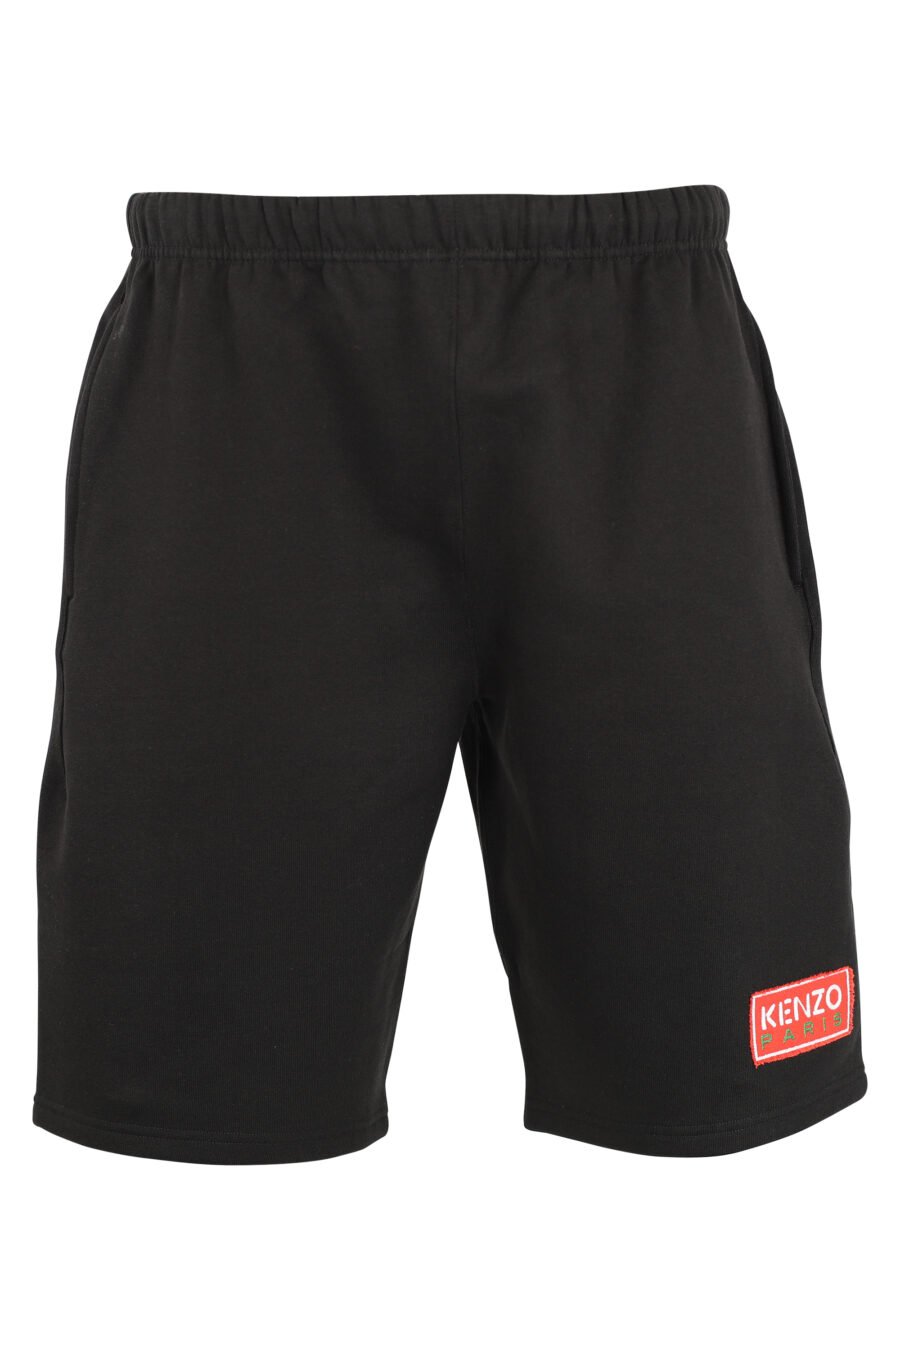 Pantalón de chándal negro corto con minilogo "paris classic" - IMG 9509